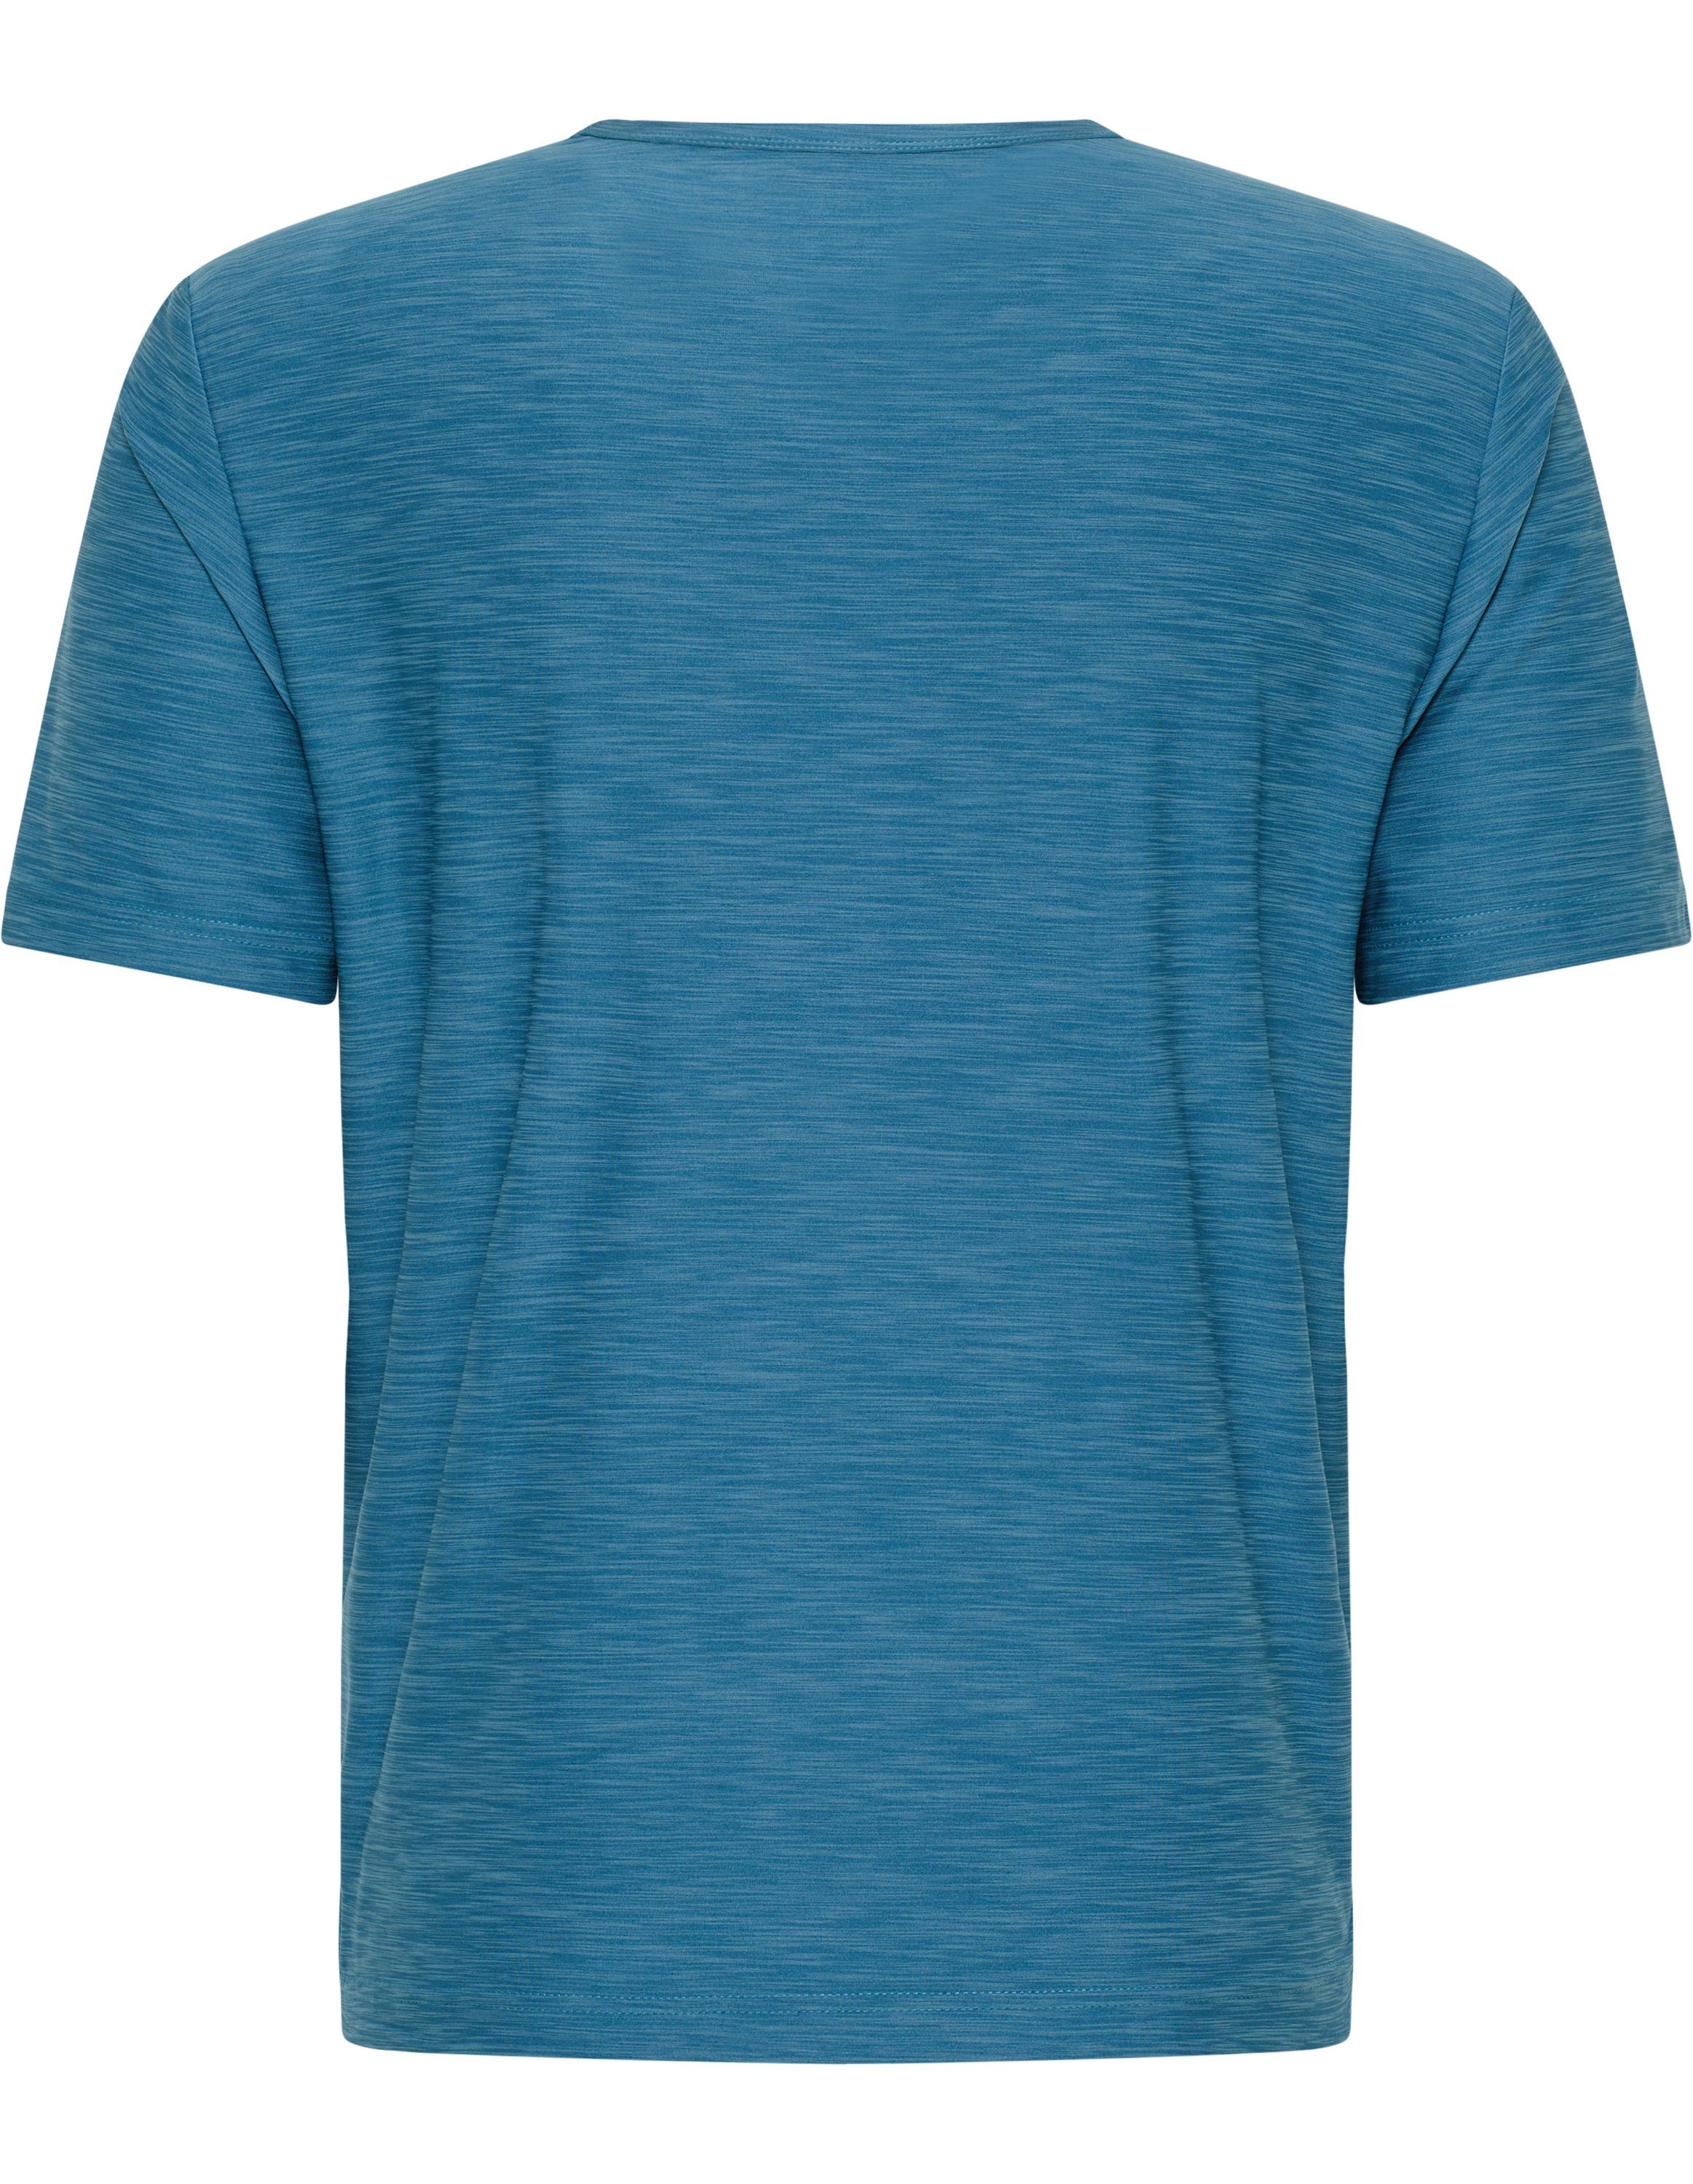 Joy Sportswear T-Shirt T-Shirt VITUS blue melange metallic